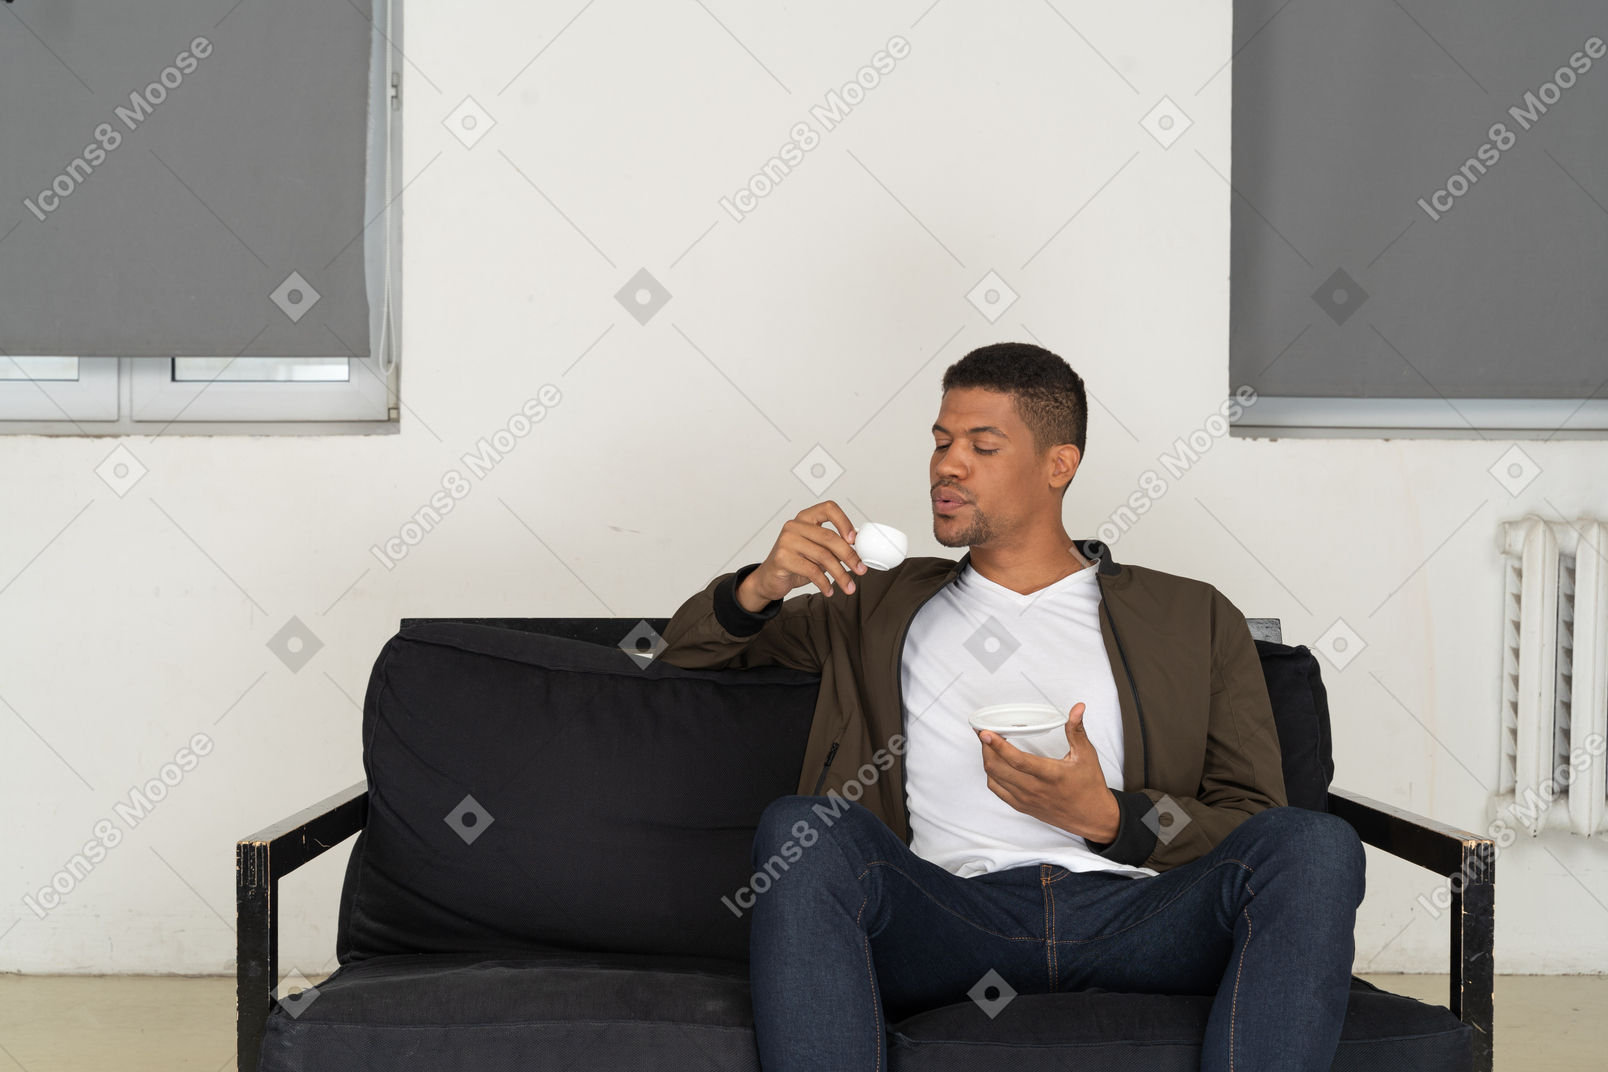 Vista frontal de un joven soñando sentado en un sofá mientras bebe café